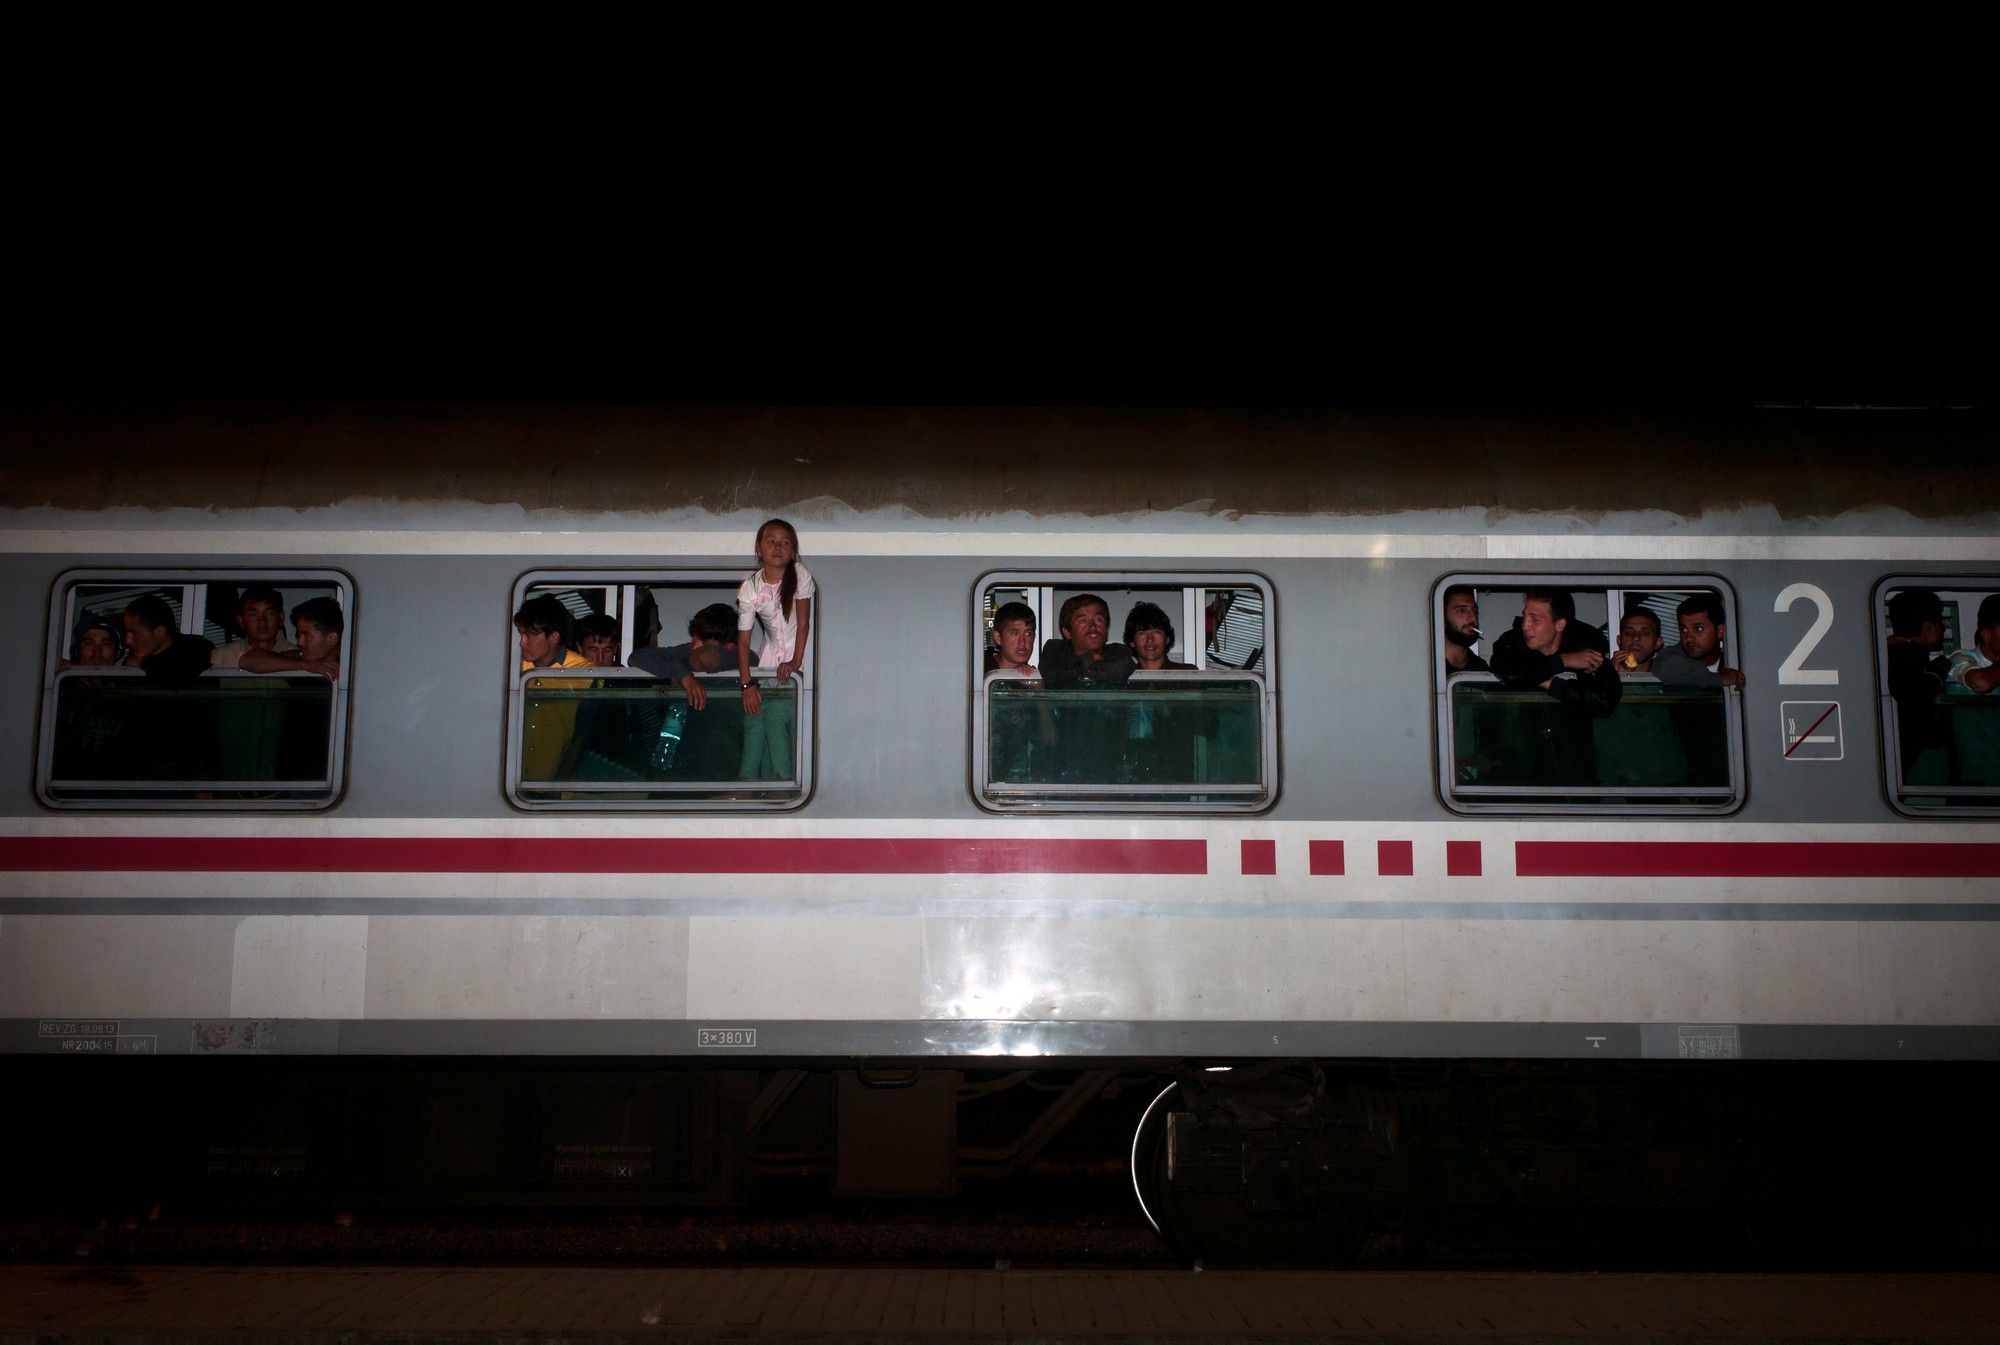 Refugees just boarded on a train in Torvanik, Croatia. The refugees are travelling by trains and busses, through the Balkan region, to get to Germany. October 1, 2015 / Ðñüóöõãåò ìüëéò åðéâéâÜóôçêáí óå ôñáßíï óôçí êùìüðïëç ÔïñâÜíéê, Êñïáôßá. Ïé ðñüóöõãåò äéáó÷ßæïõí ôá ÂáëêÜíéá, ôáîéäåýïíôáò ìå ôñáßíá êáé ëåùöïñåßá, ìå ôåëéêü ðñïïñéóìü ôçí Ãåñìáíßá. 1, Ïêôþâñéïò 2015